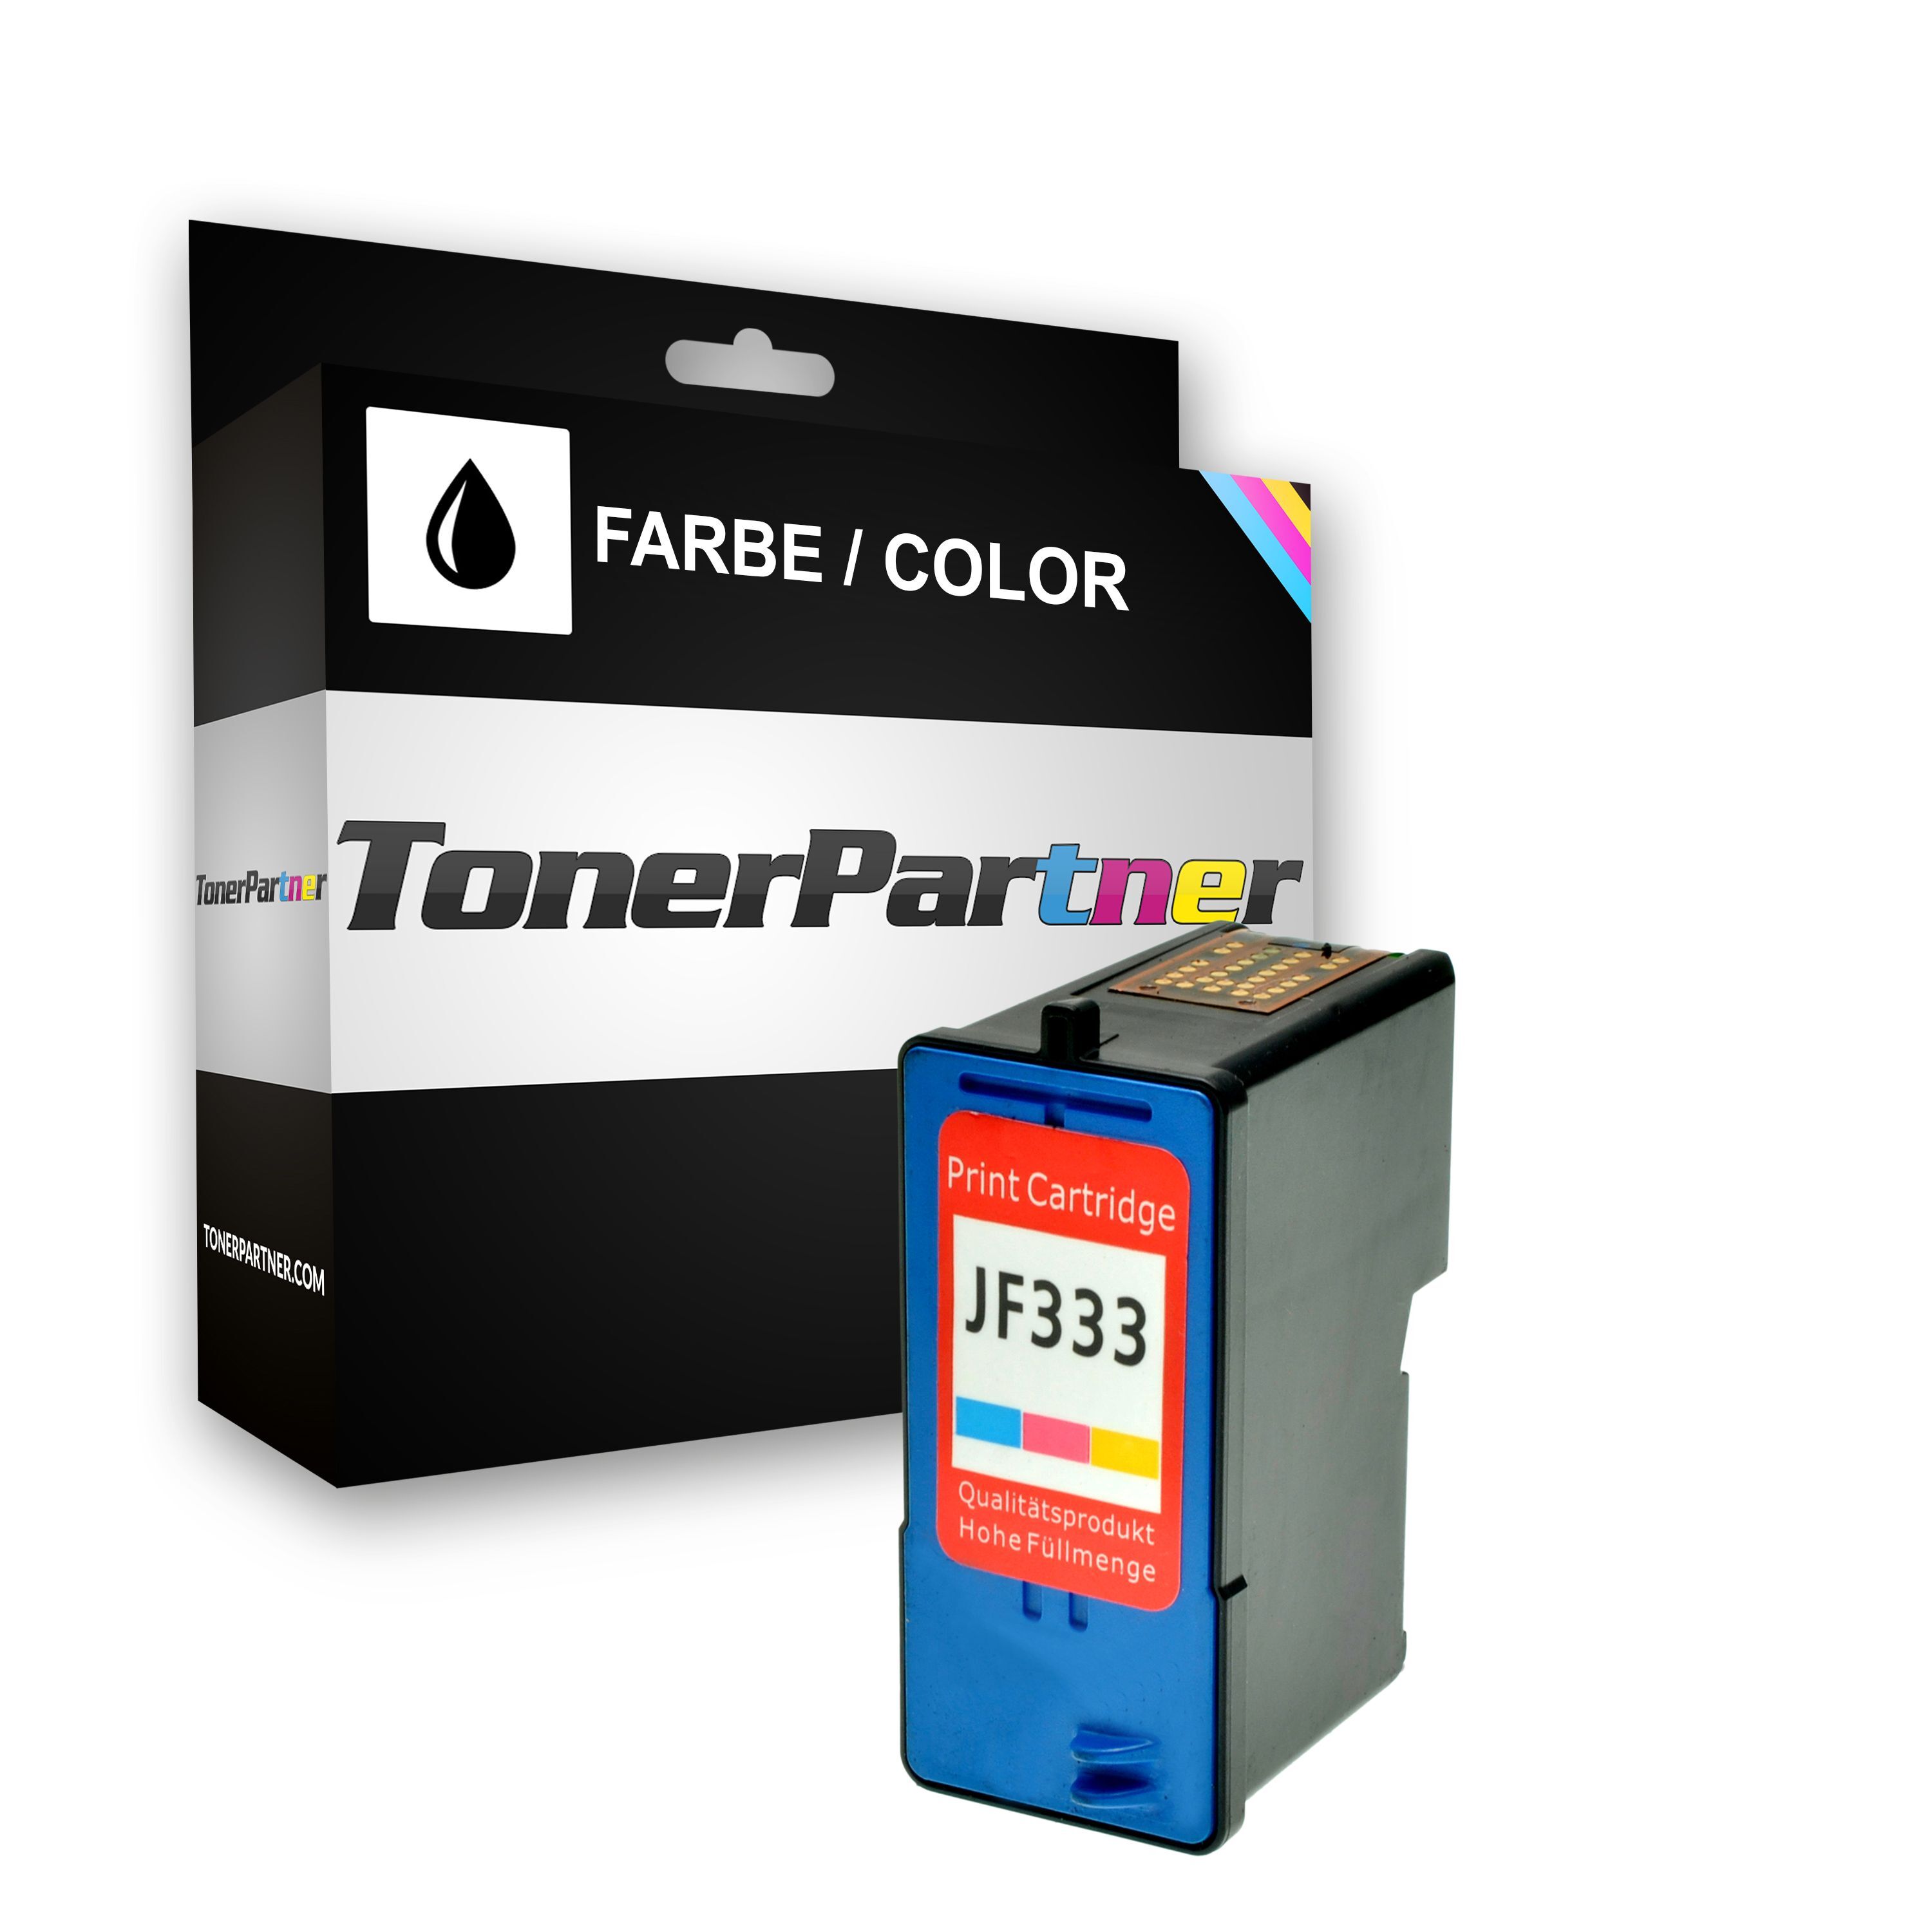 TonerPartner Compatible avec Dell JF333 / 592-10177 cartouche d'encre couleur, 104 pages, 21,28 centimes par page de TonerPartner